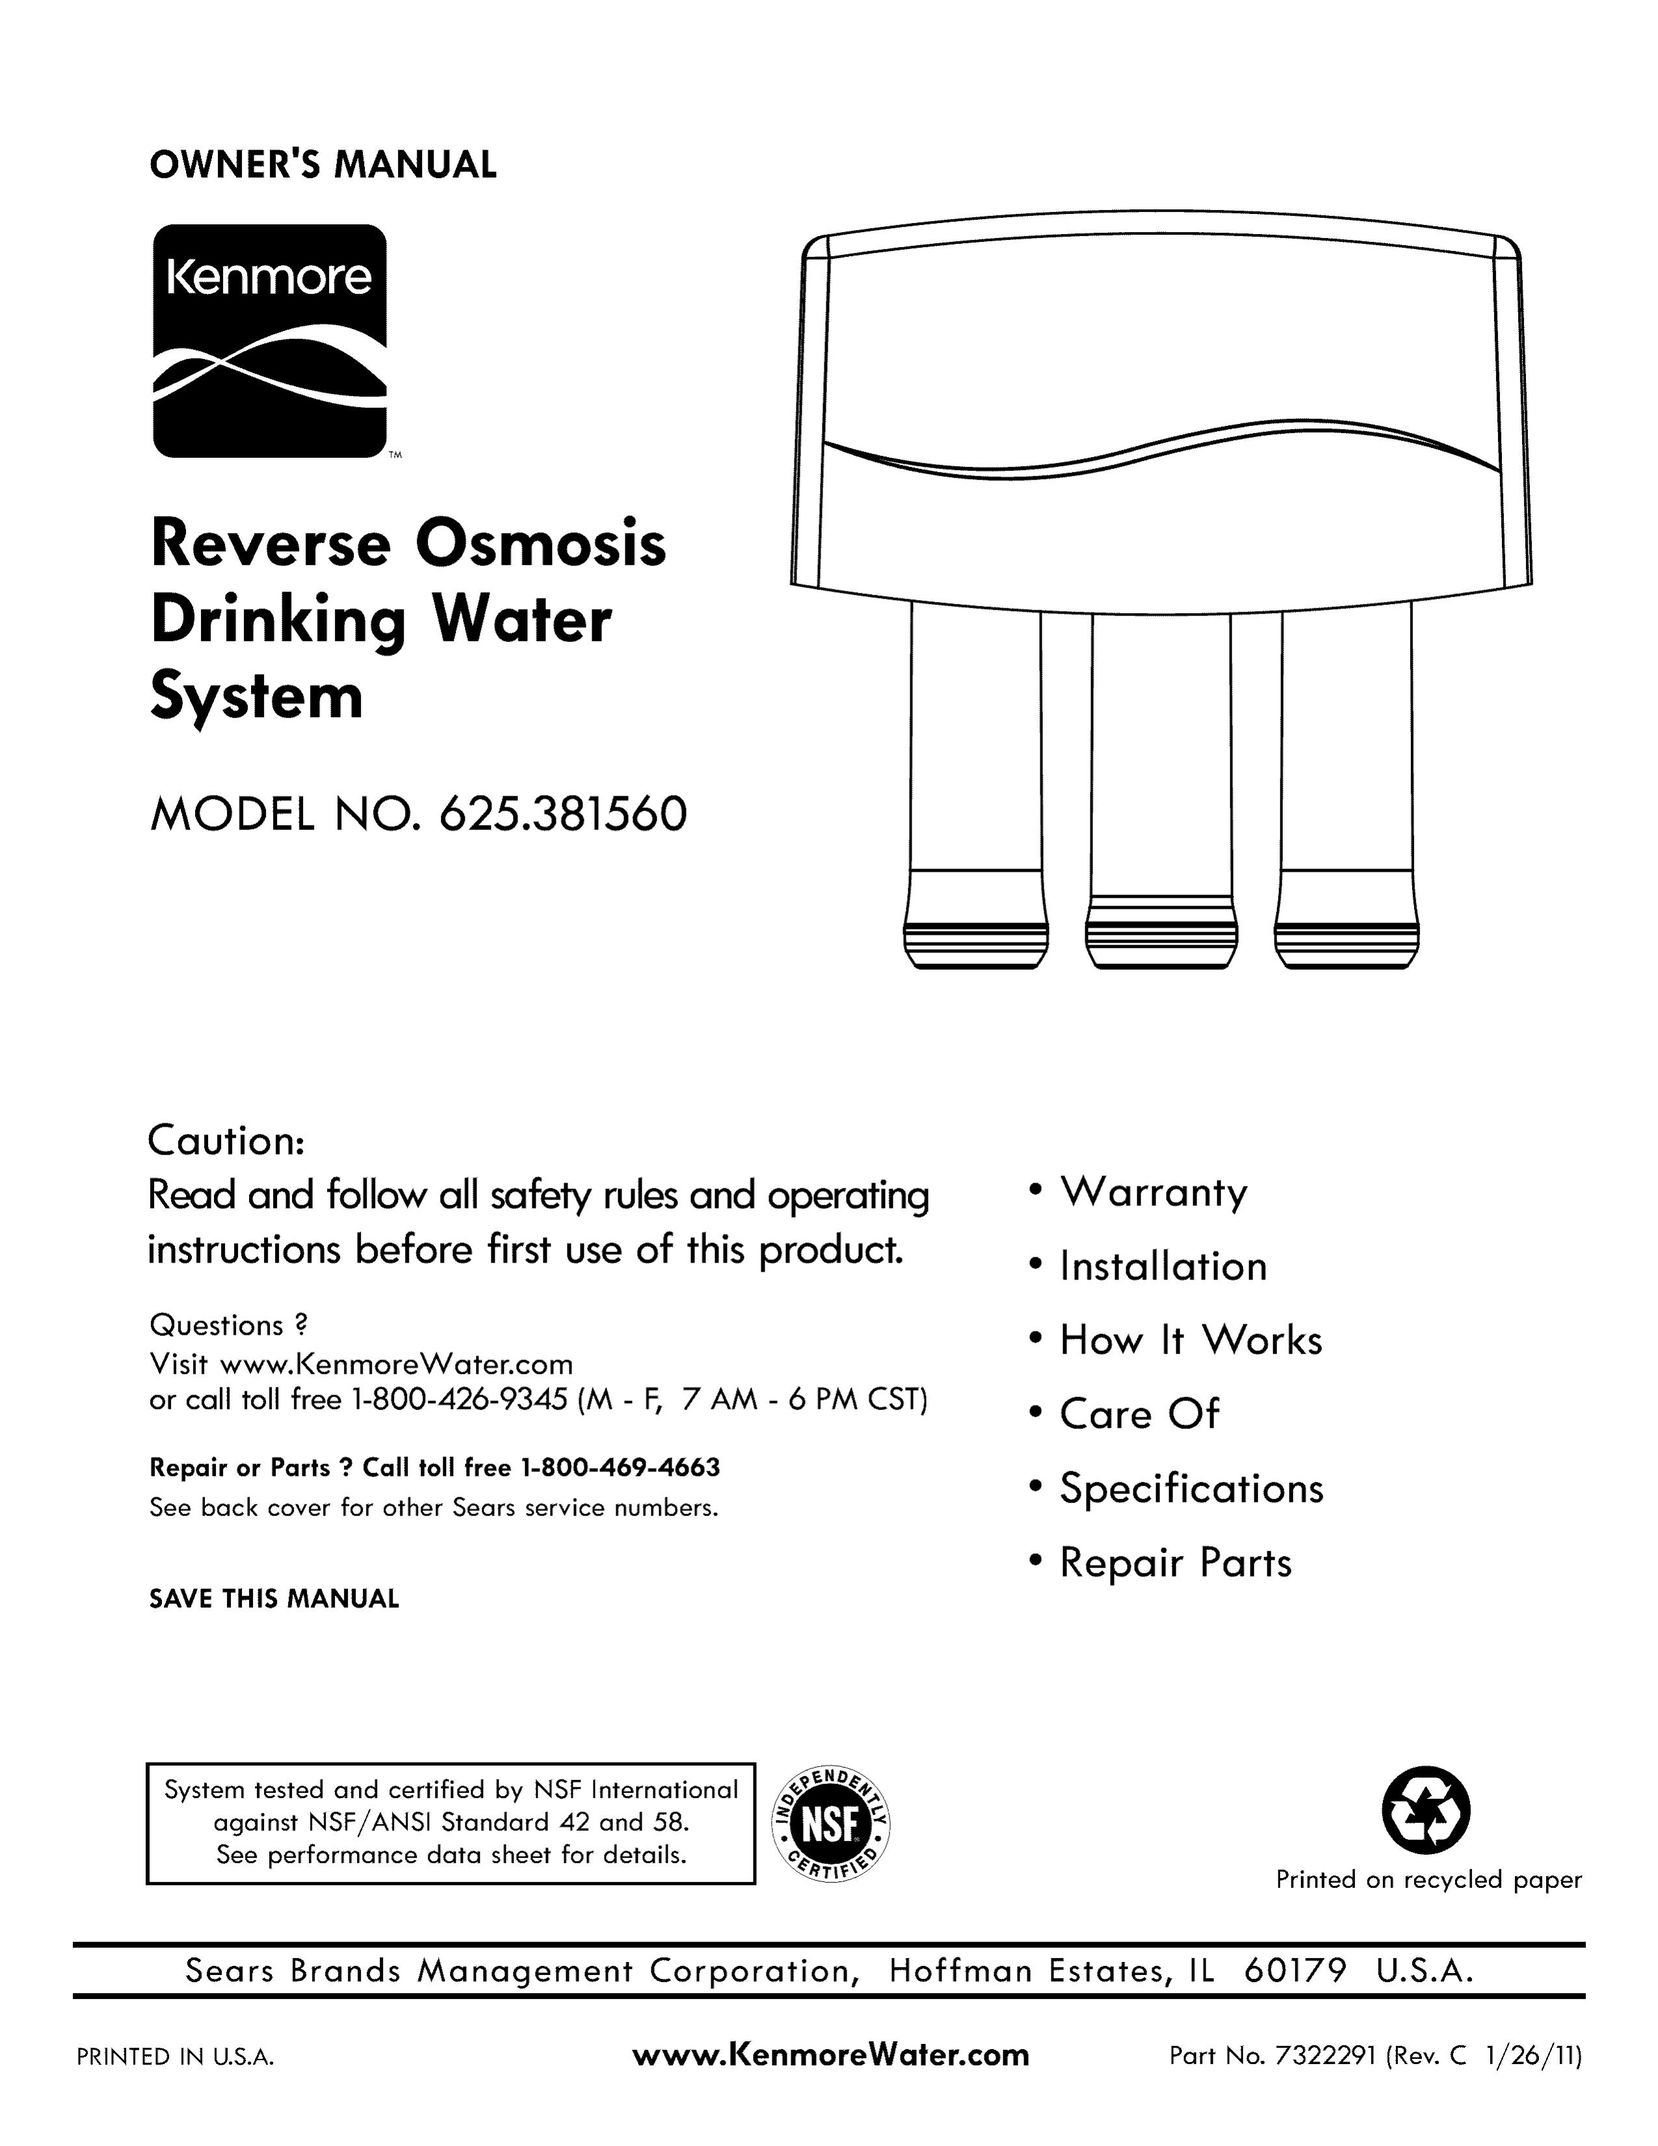 Kenmore 625.38156 Water System User Manual